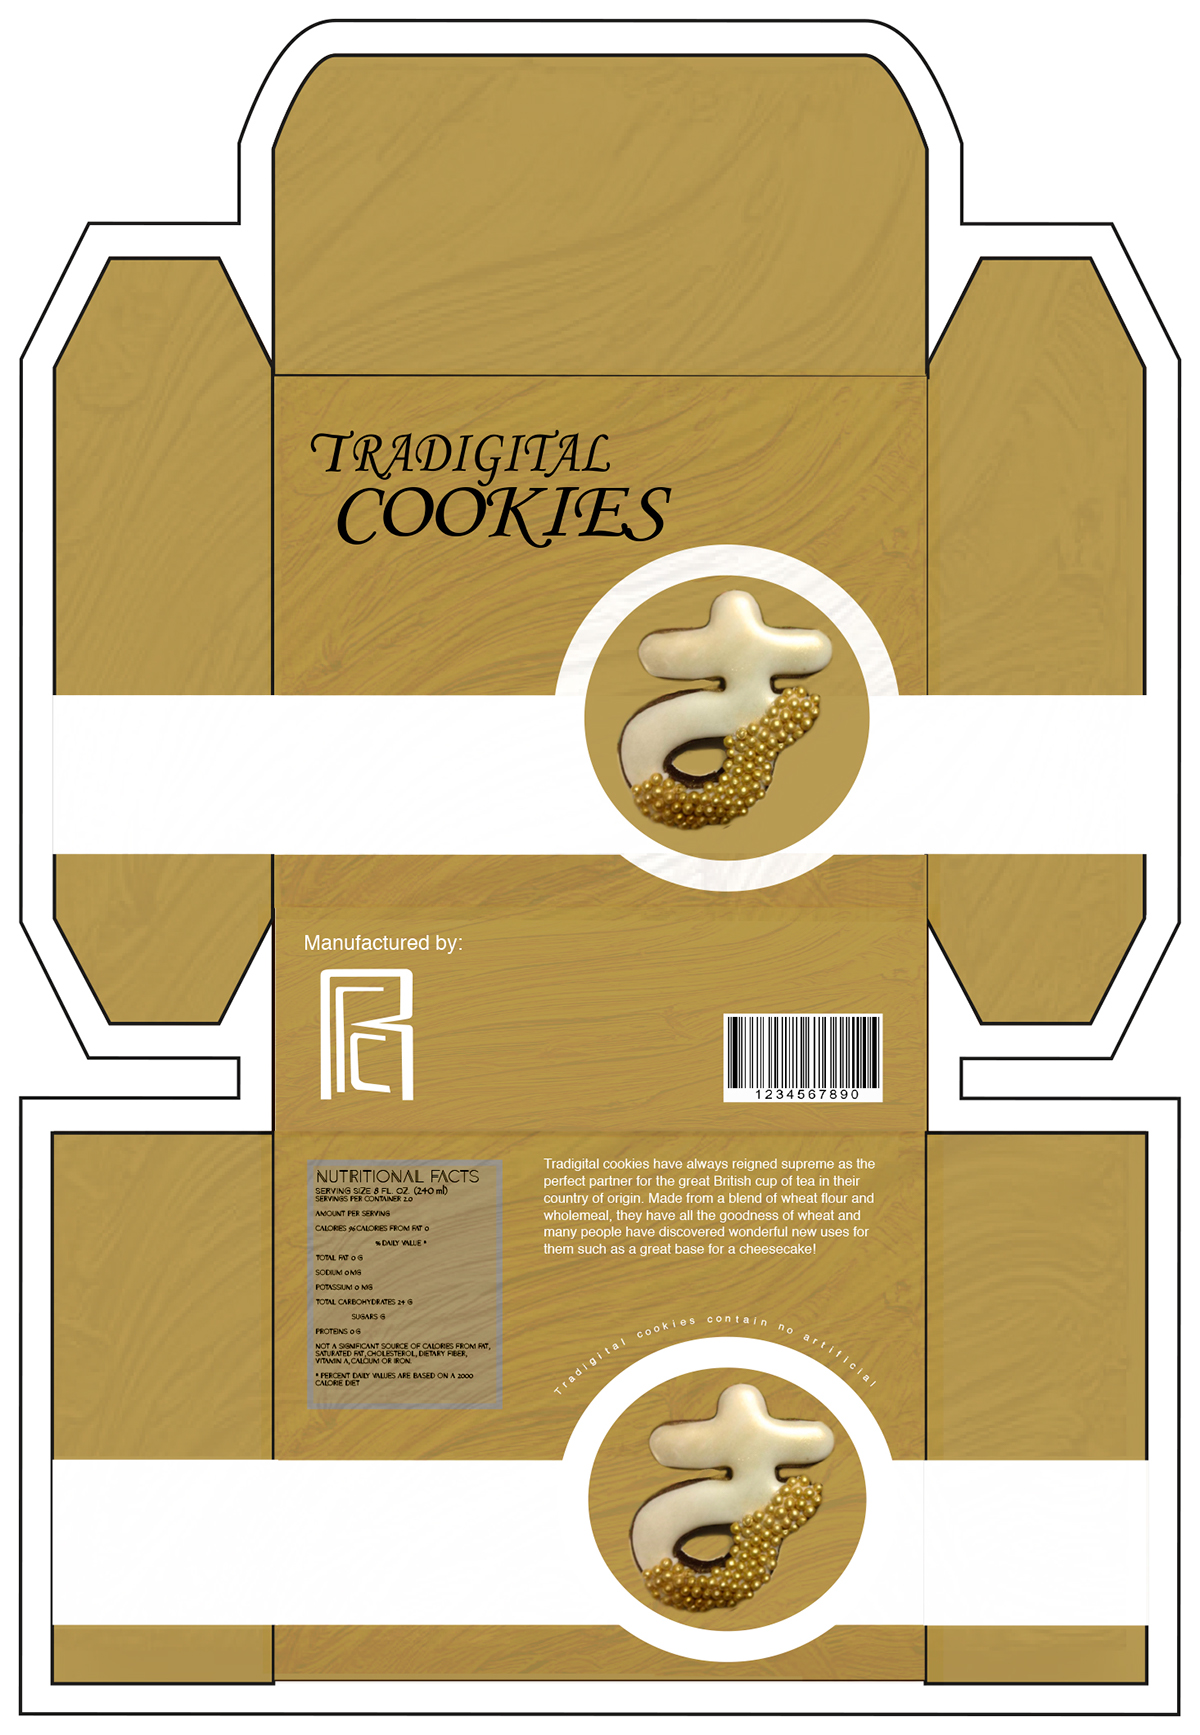 cookies tradigital chocolate package box